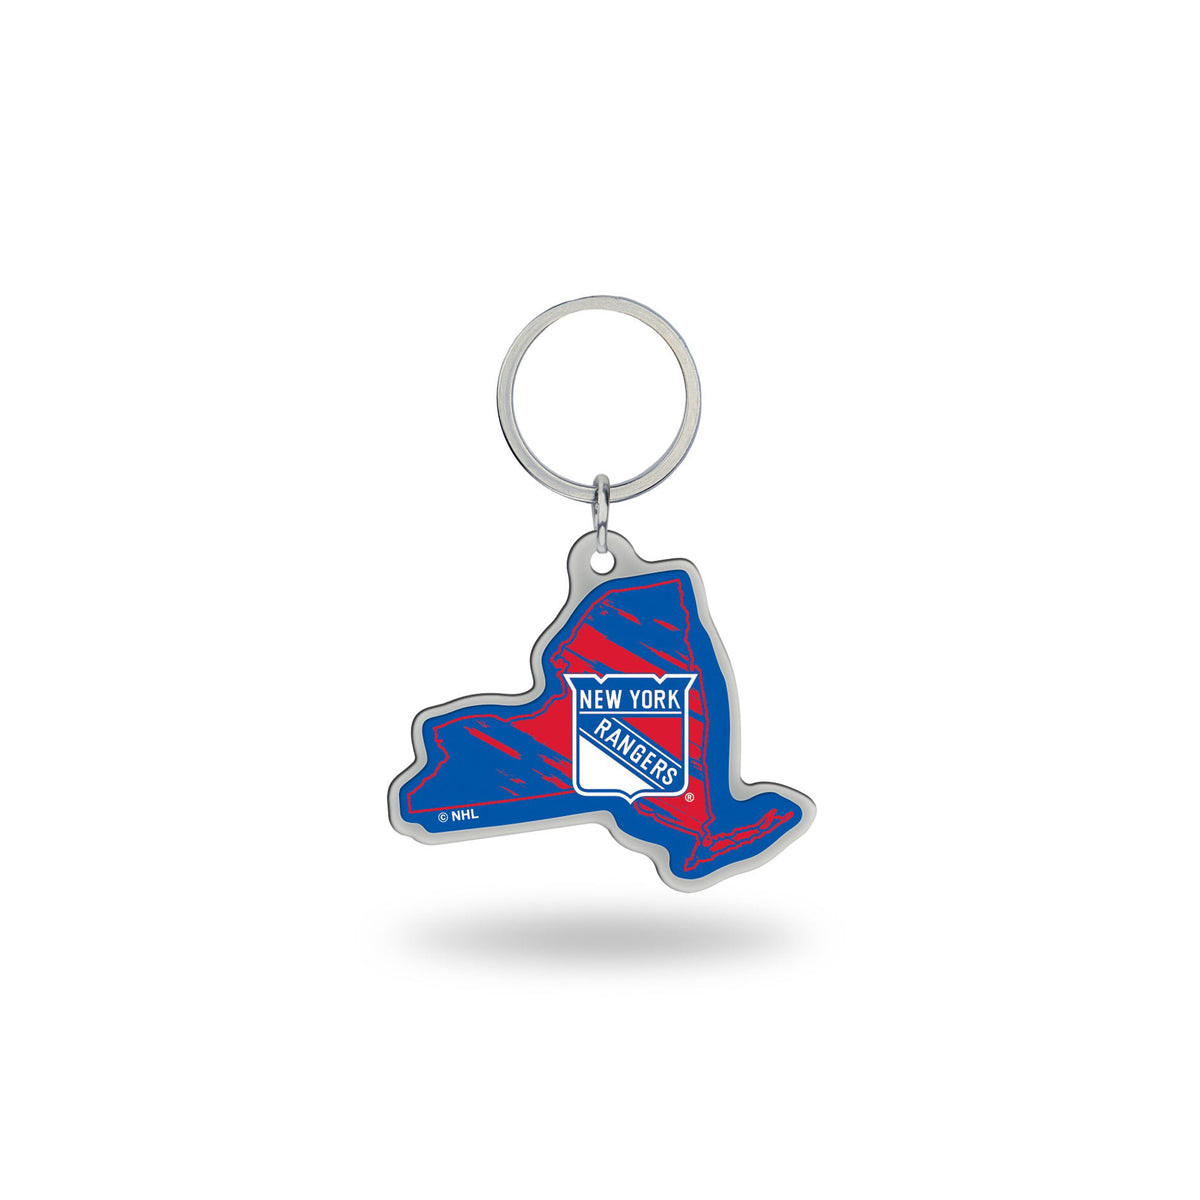 New York Rangers - New York State Shaped Keychain